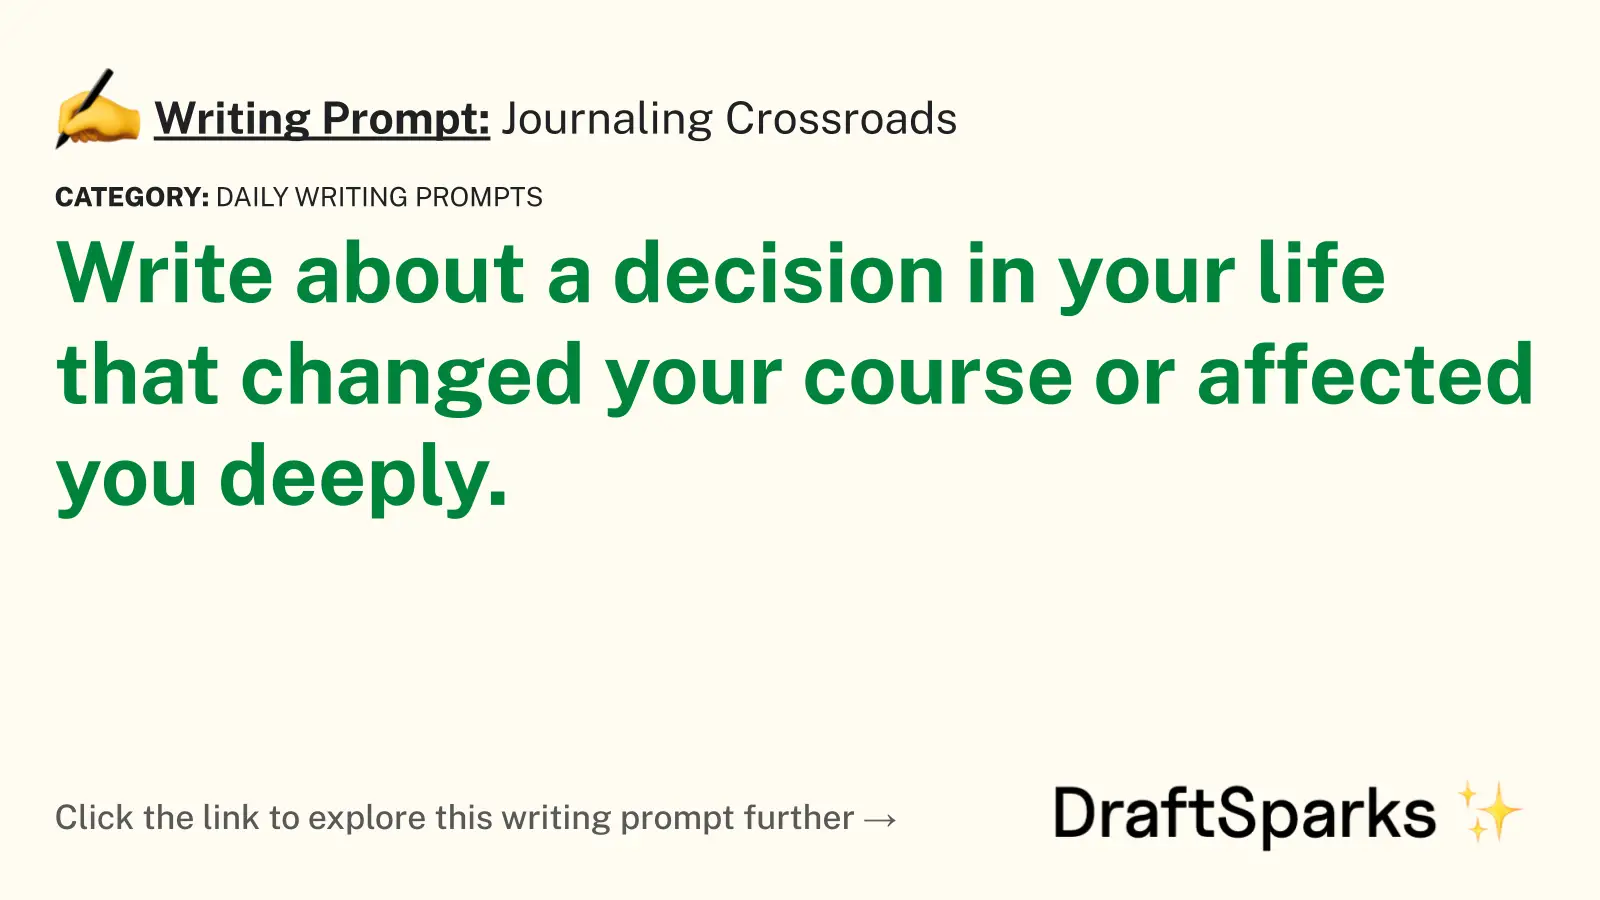 Journaling Crossroads